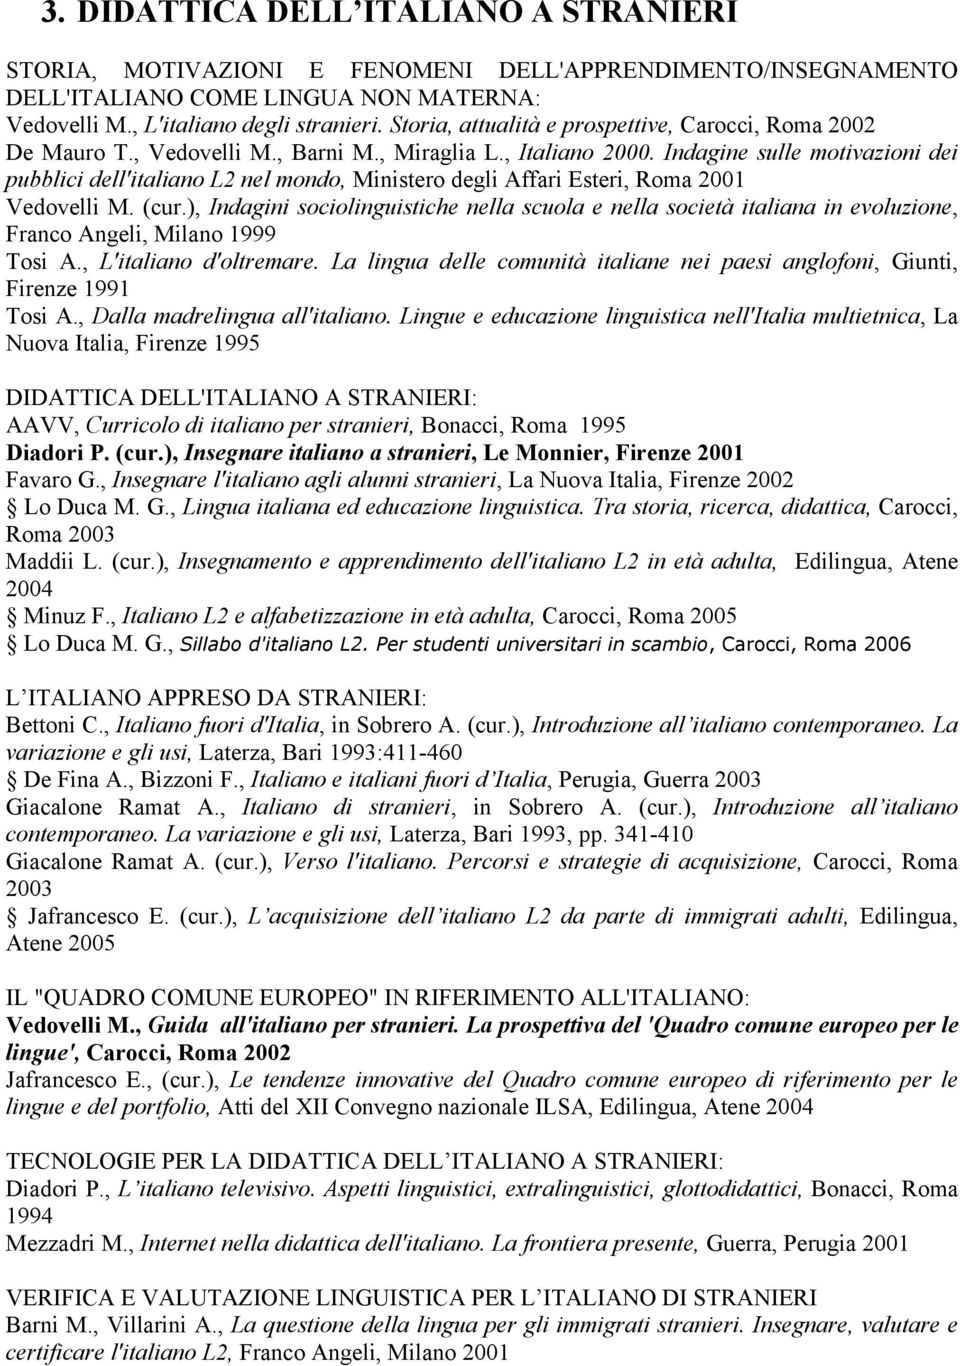 Indagine sulle motivazioni dei pubblici dell'italiano L2 nel mondo, Ministero degli Affari Esteri, Roma 2001 Vedovelli M. (cur.